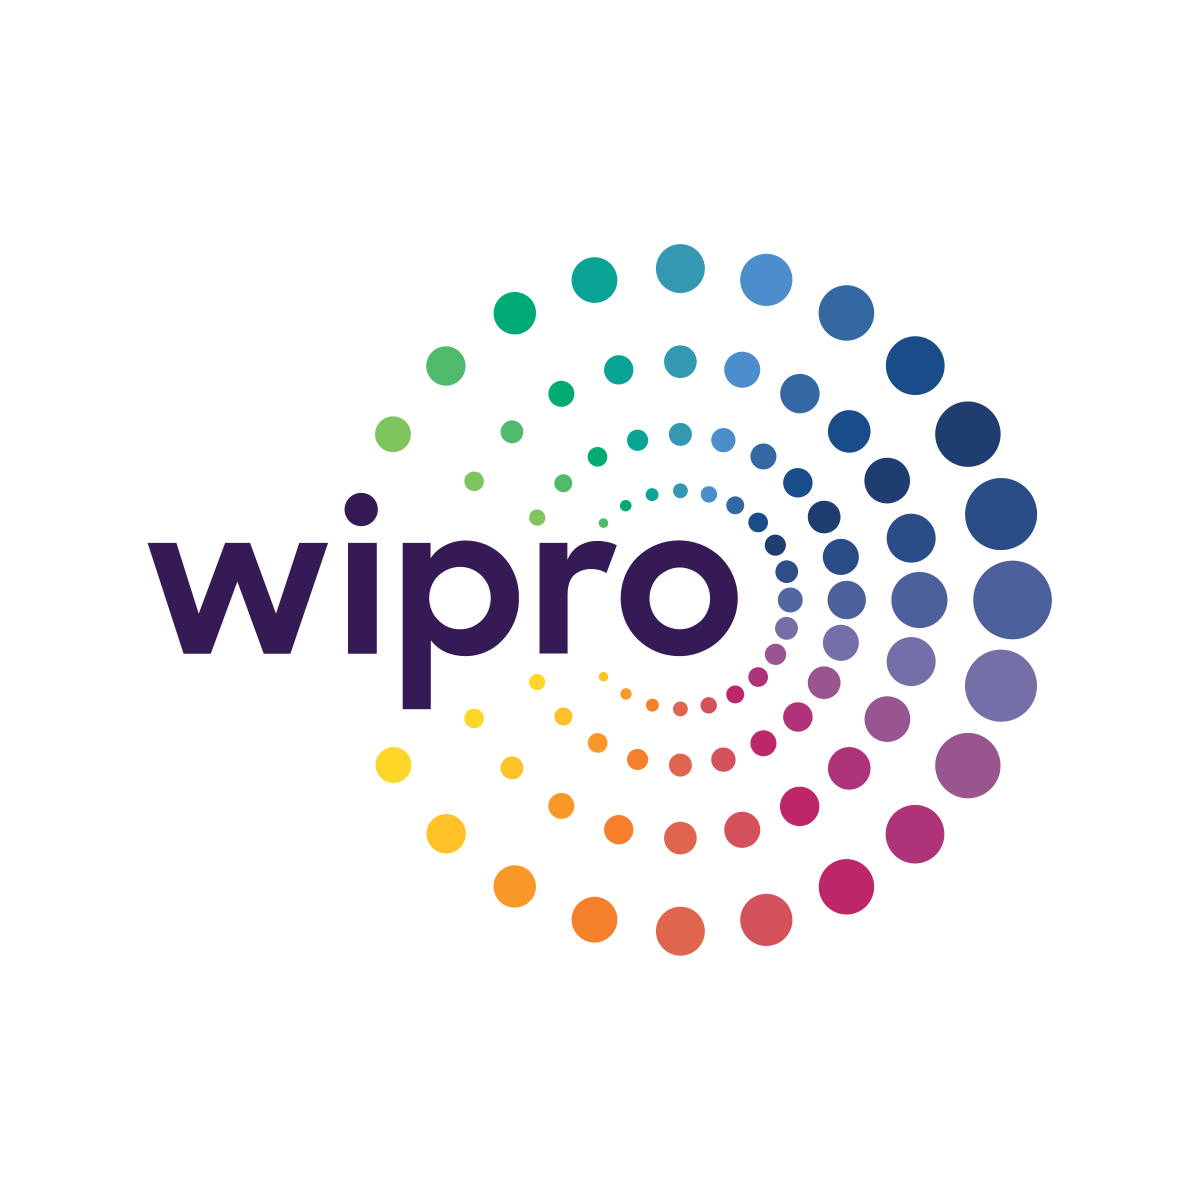 Wipro - Wikipedia